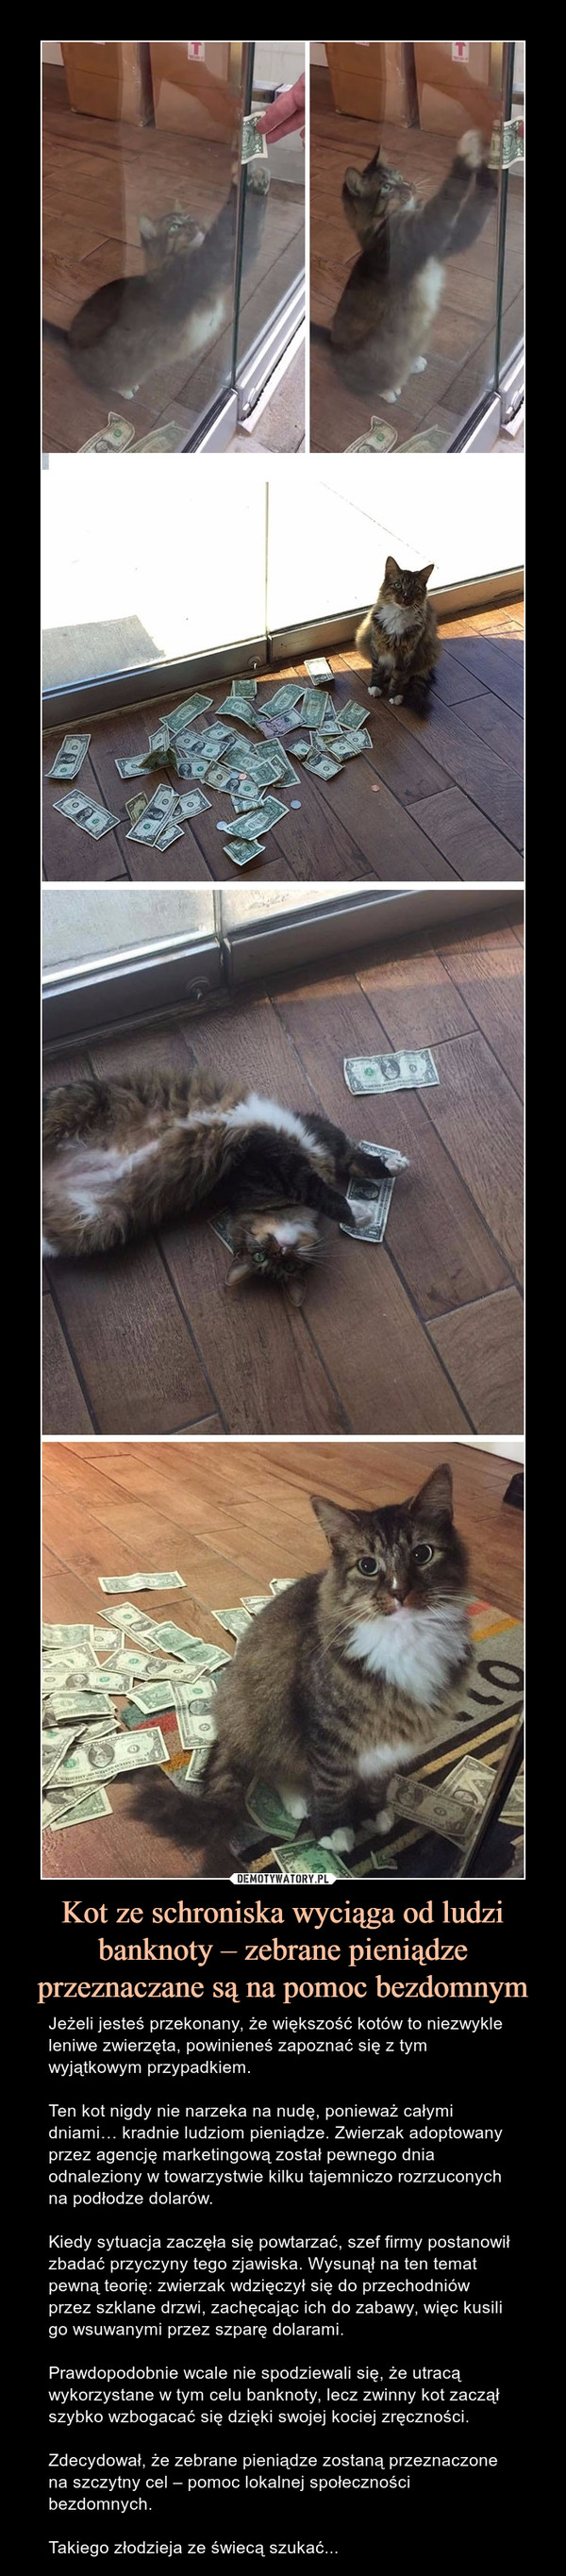 Kot ze schroniska wyciąga od ludzi banknoty – zebrane pieniądze przeznaczane są na pomoc bezdomnym – Jeżeli jesteś przekonany, że większość kotów to niezwykle leniwe zwierzęta, powinieneś zapoznać się z tym wyjątkowym przypadkiem.Ten kot nigdy nie narzeka na nudę, ponieważ całymi dniami… kradnie ludziom pieniądze. Zwierzak adoptowany przez agencję marketingową został pewnego dnia odnaleziony w towarzystwie kilku tajemniczo rozrzuconych na podłodze dolarów.Kiedy sytuacja zaczęła się powtarzać, szef firmy postanowił zbadać przyczyny tego zjawiska. Wysunął na ten temat pewną teorię: zwierzak wdzięczył się do przechodniów przez szklane drzwi, zachęcając ich do zabawy, więc kusili go wsuwanymi przez szparę dolarami.Prawdopodobnie wcale nie spodziewali się, że utracą wykorzystane w tym celu banknoty, lecz zwinny kot zaczął szybko wzbogacać się dzięki swojej kociej zręczności.Zdecydował, że zebrane pieniądze zostaną przeznaczone na szczytny cel – pomoc lokalnej społeczności bezdomnych.Takiego złodzieja ze świecą szukać... 